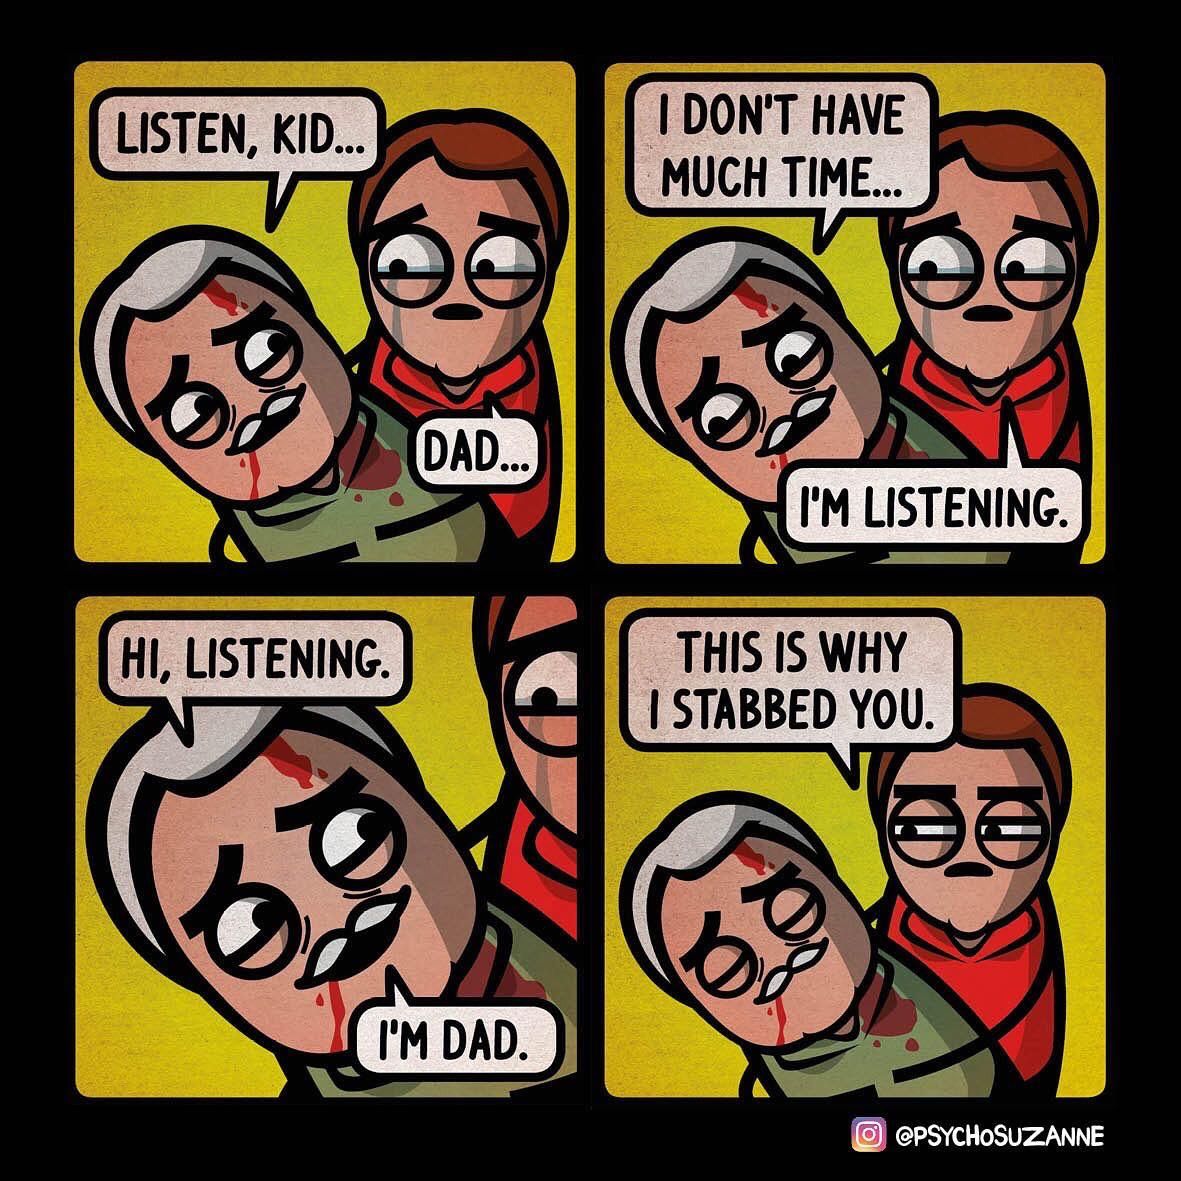 Dad’s final joke